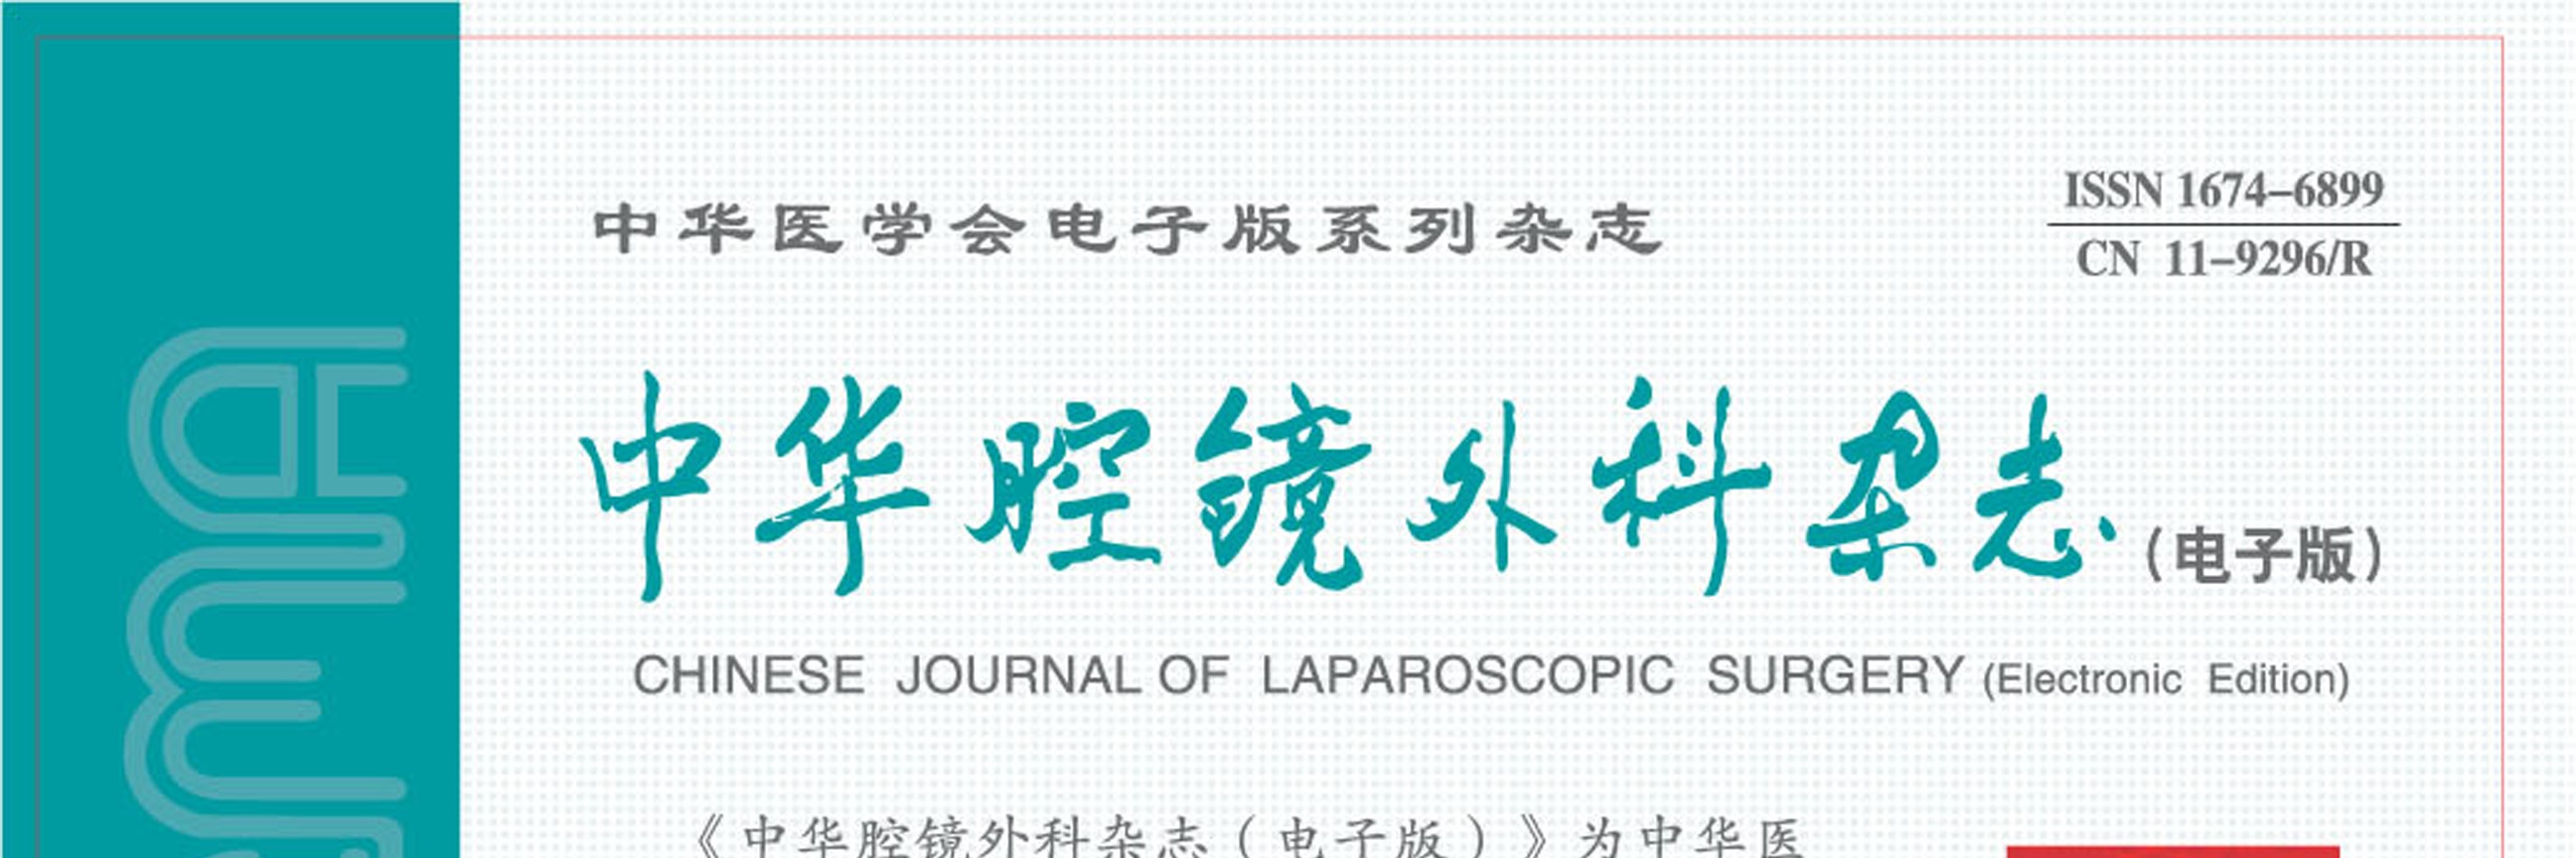 中国大陆妇科单孔腹腔镜及NOTES手术的探索发展及现状